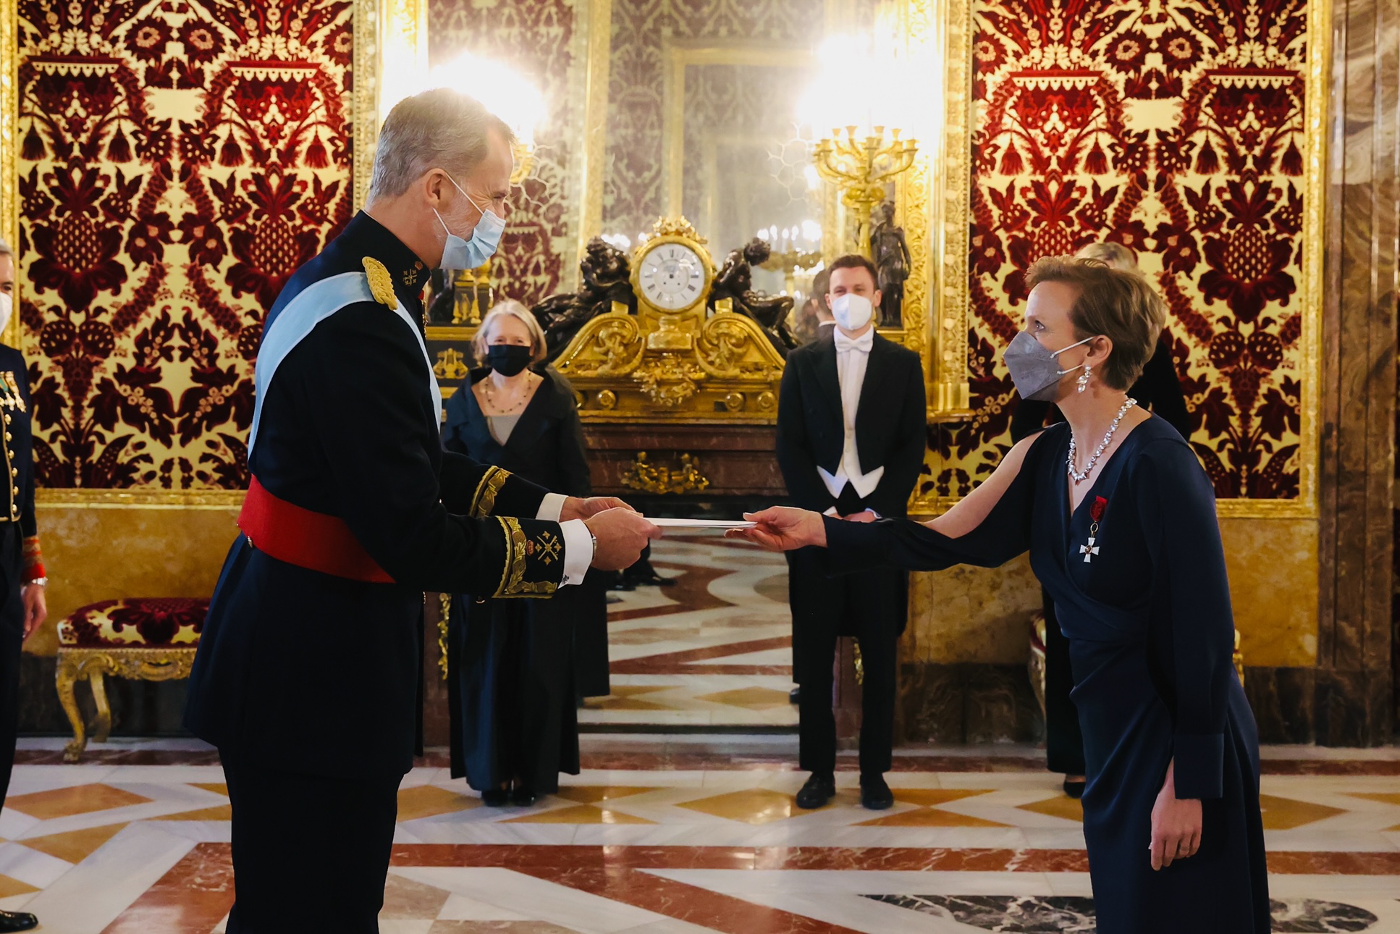 Suomen Espanjan-suurlähettiläs Sari Rautio ojentaa valtuuskirjeensä Espanjan kuningas Felipe VI:lle.